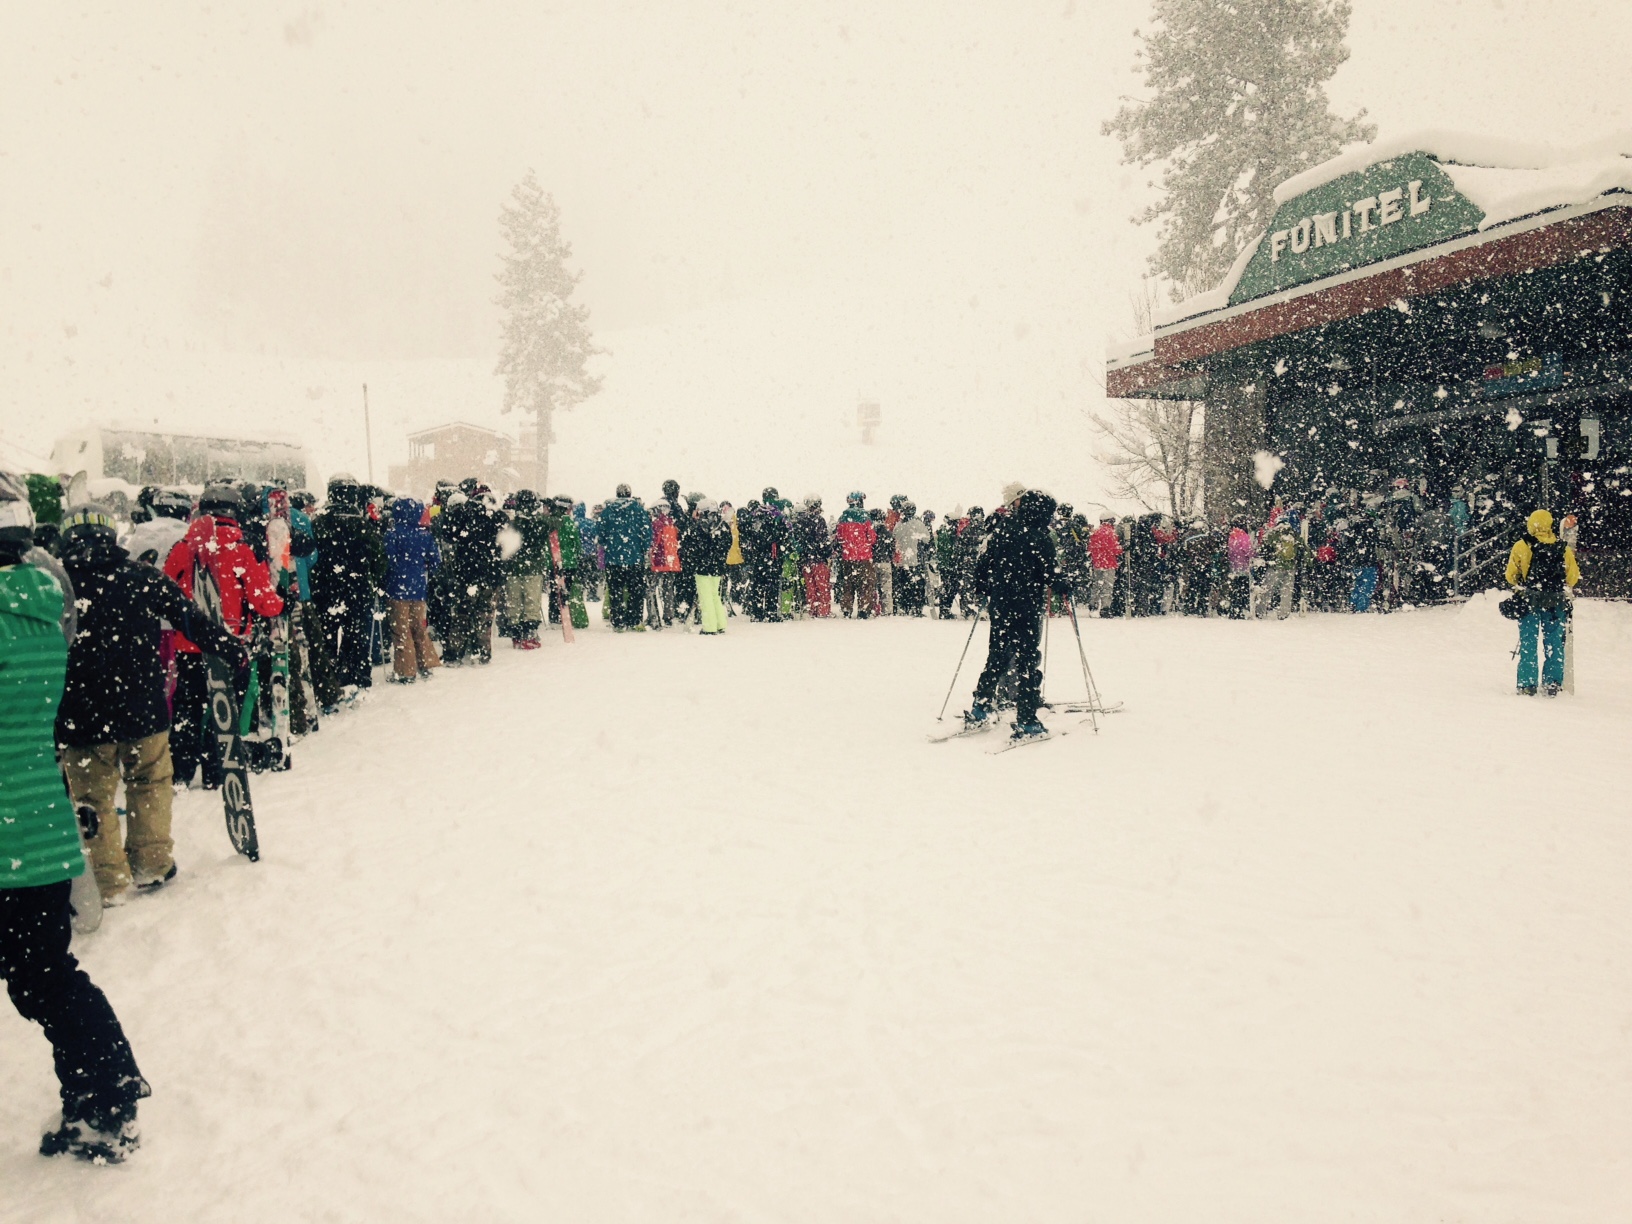 Snowfest brings the snow Lake Tahoe Skiing Blog